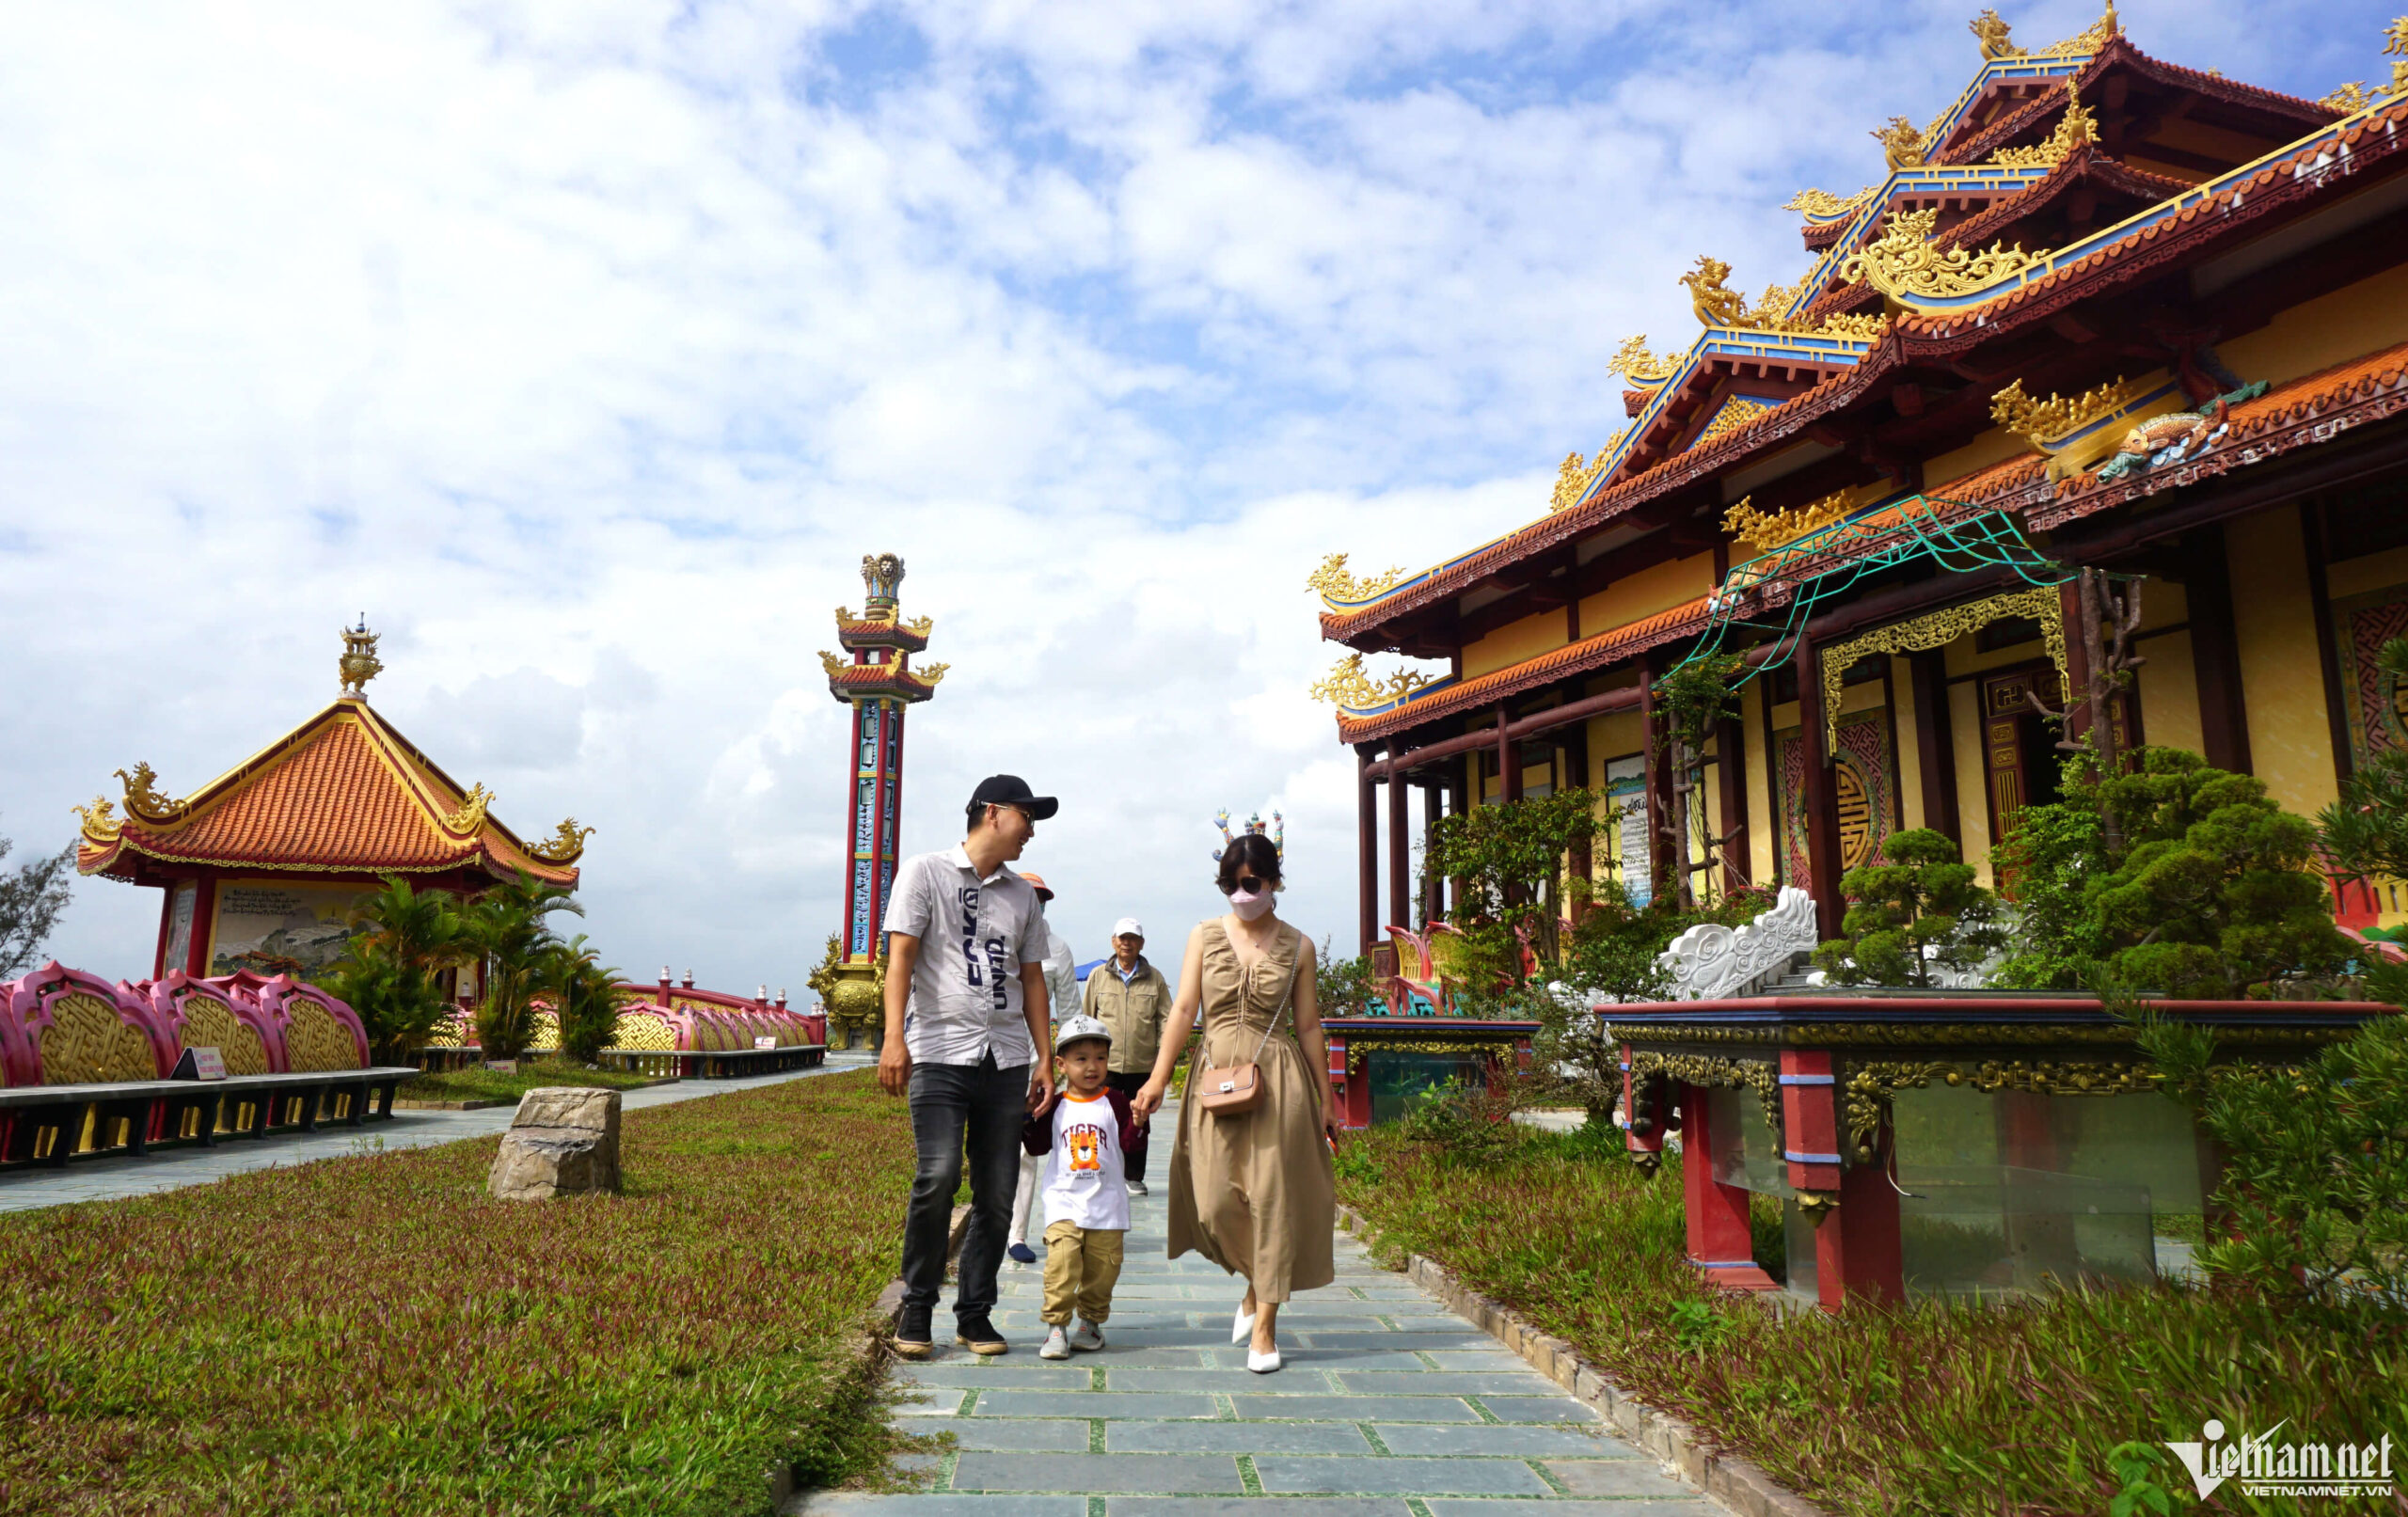 Chùa Quán Thế Âm là một trong những địa điểm tâm linh nổi tiếng ở Đà Nẵng được du khách chọn tham quan. Ngày 8-10/3 (tức từ ngày 17-19/2 âm lịch), tại chùa sẽ diễn ra Lễ hội Quán Thế Âm - Ngũ Hành Sơn năm 2023, dự kiến thu hút đông đảo người dân và du khách tham quan.